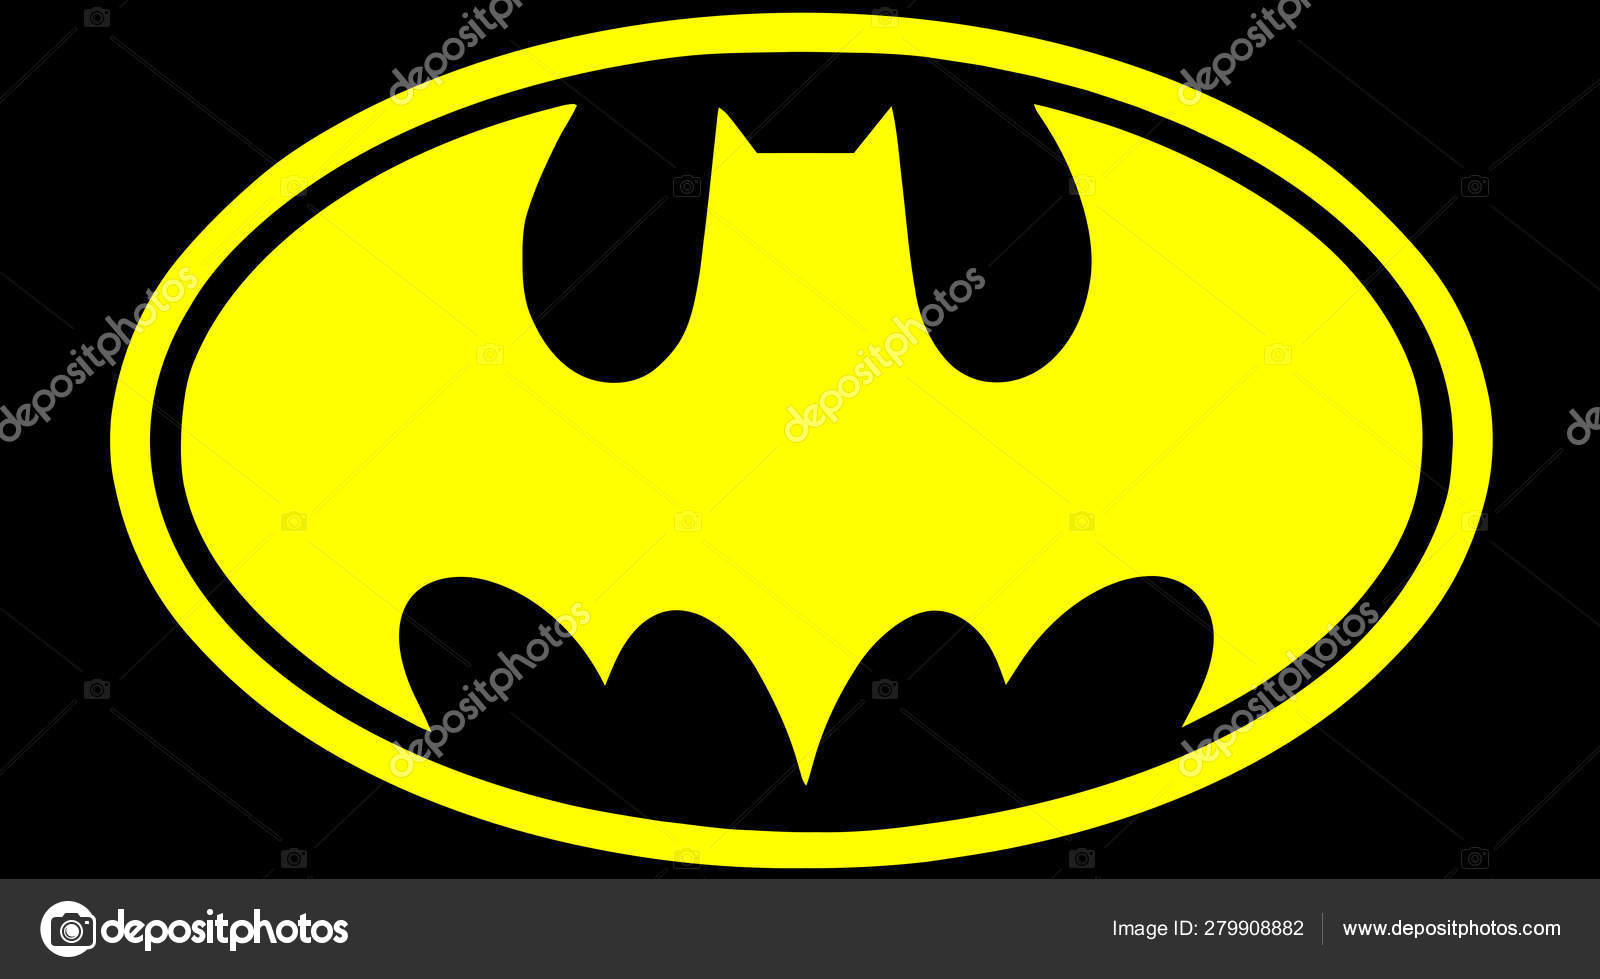 áˆ Batman Logo Stock Images Royalty Free Batman Photos Logo Photos Download On Depositphotos